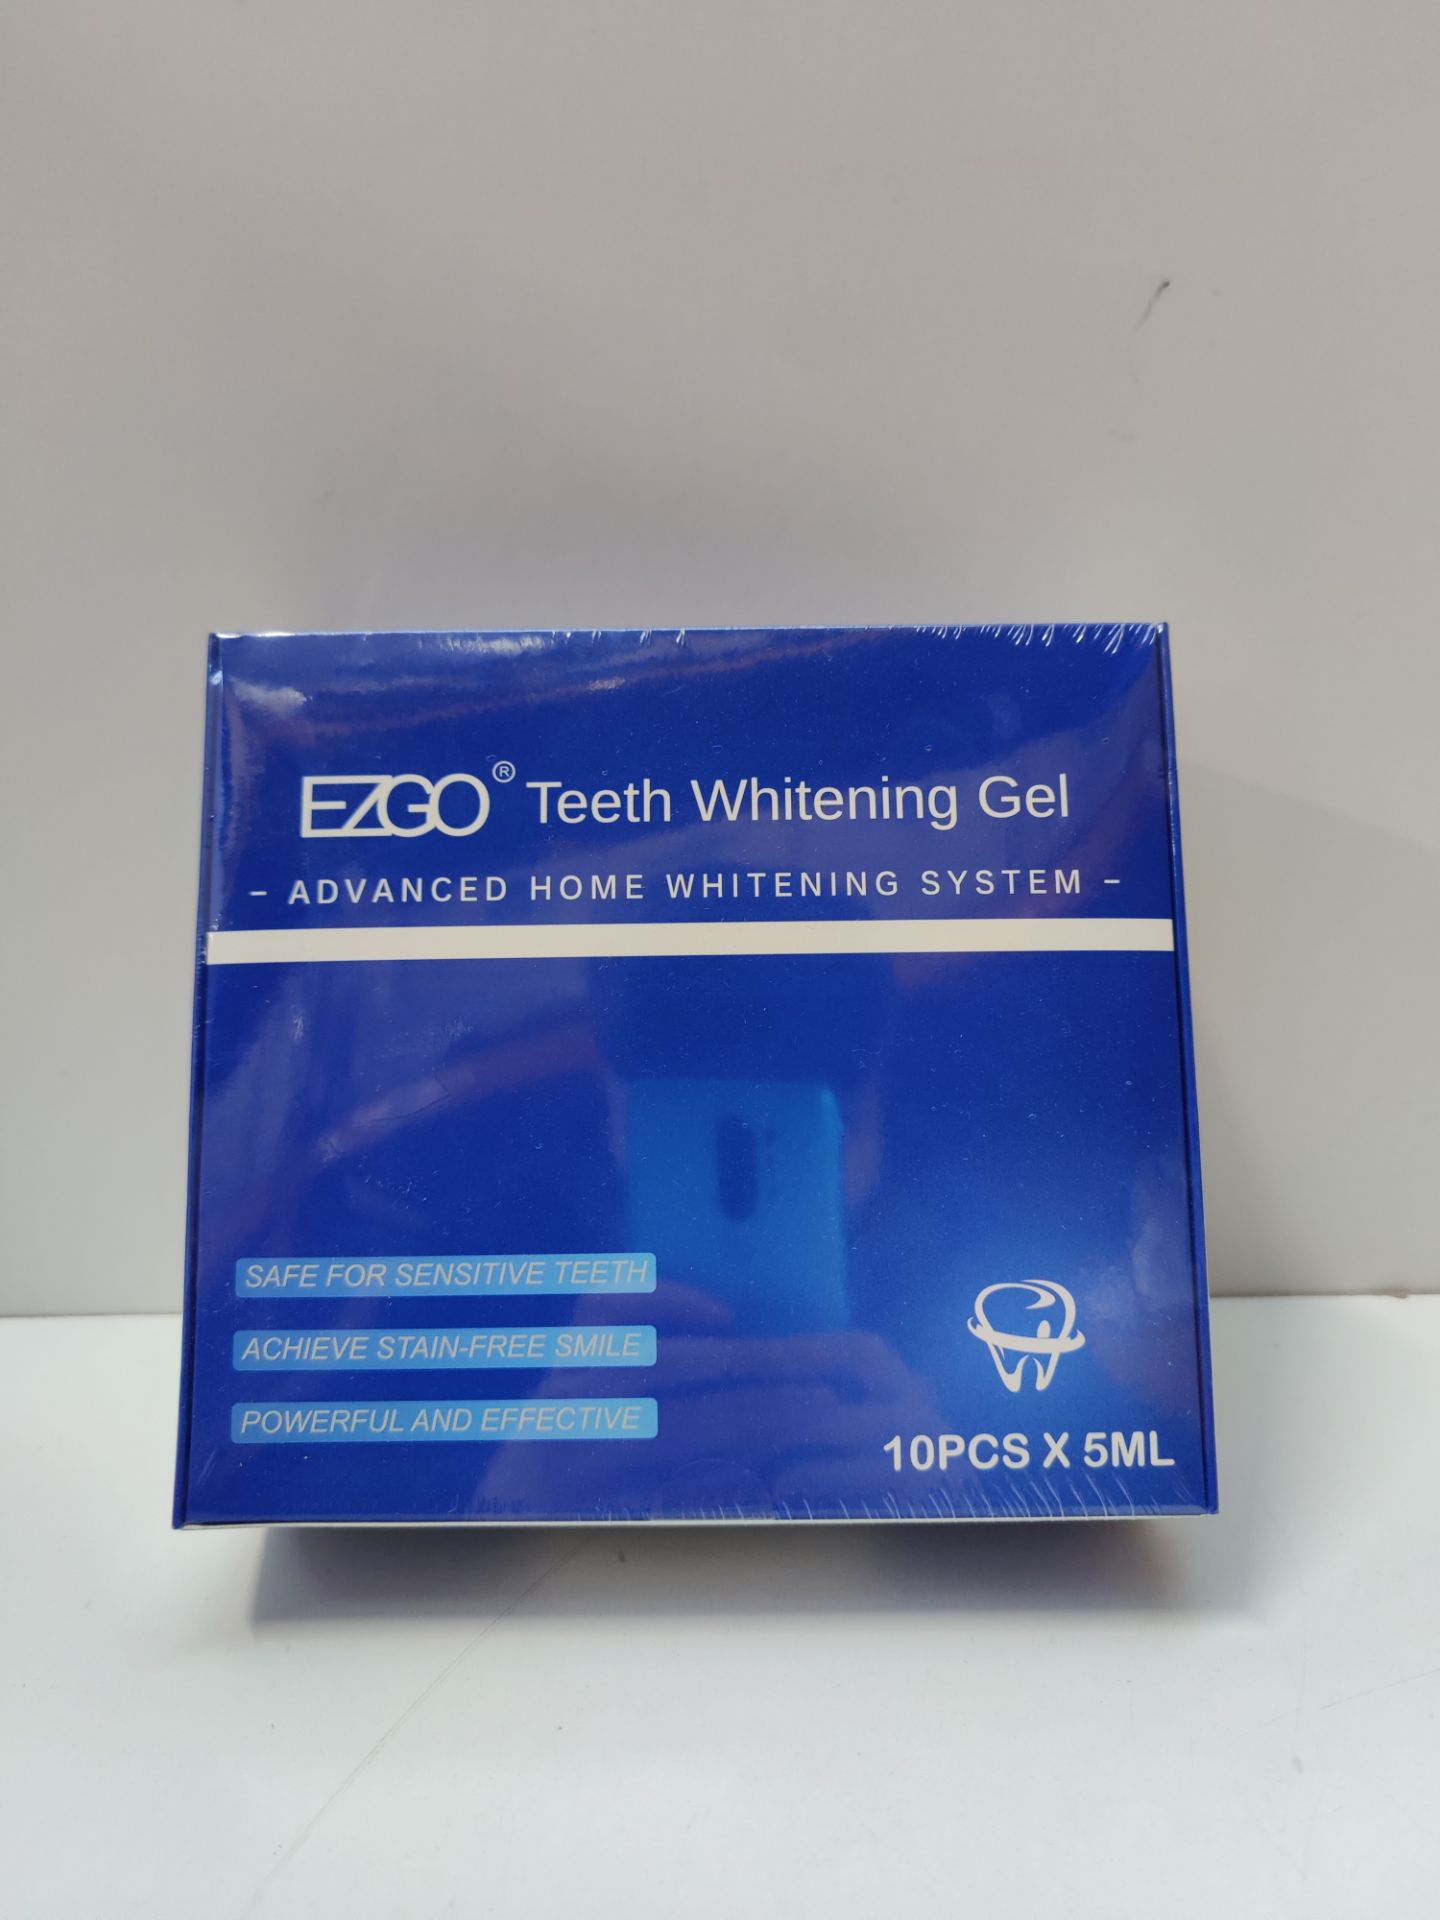 RRP £21.66 EZGO Teeth Whitening Gel Refills - Image 2 of 2